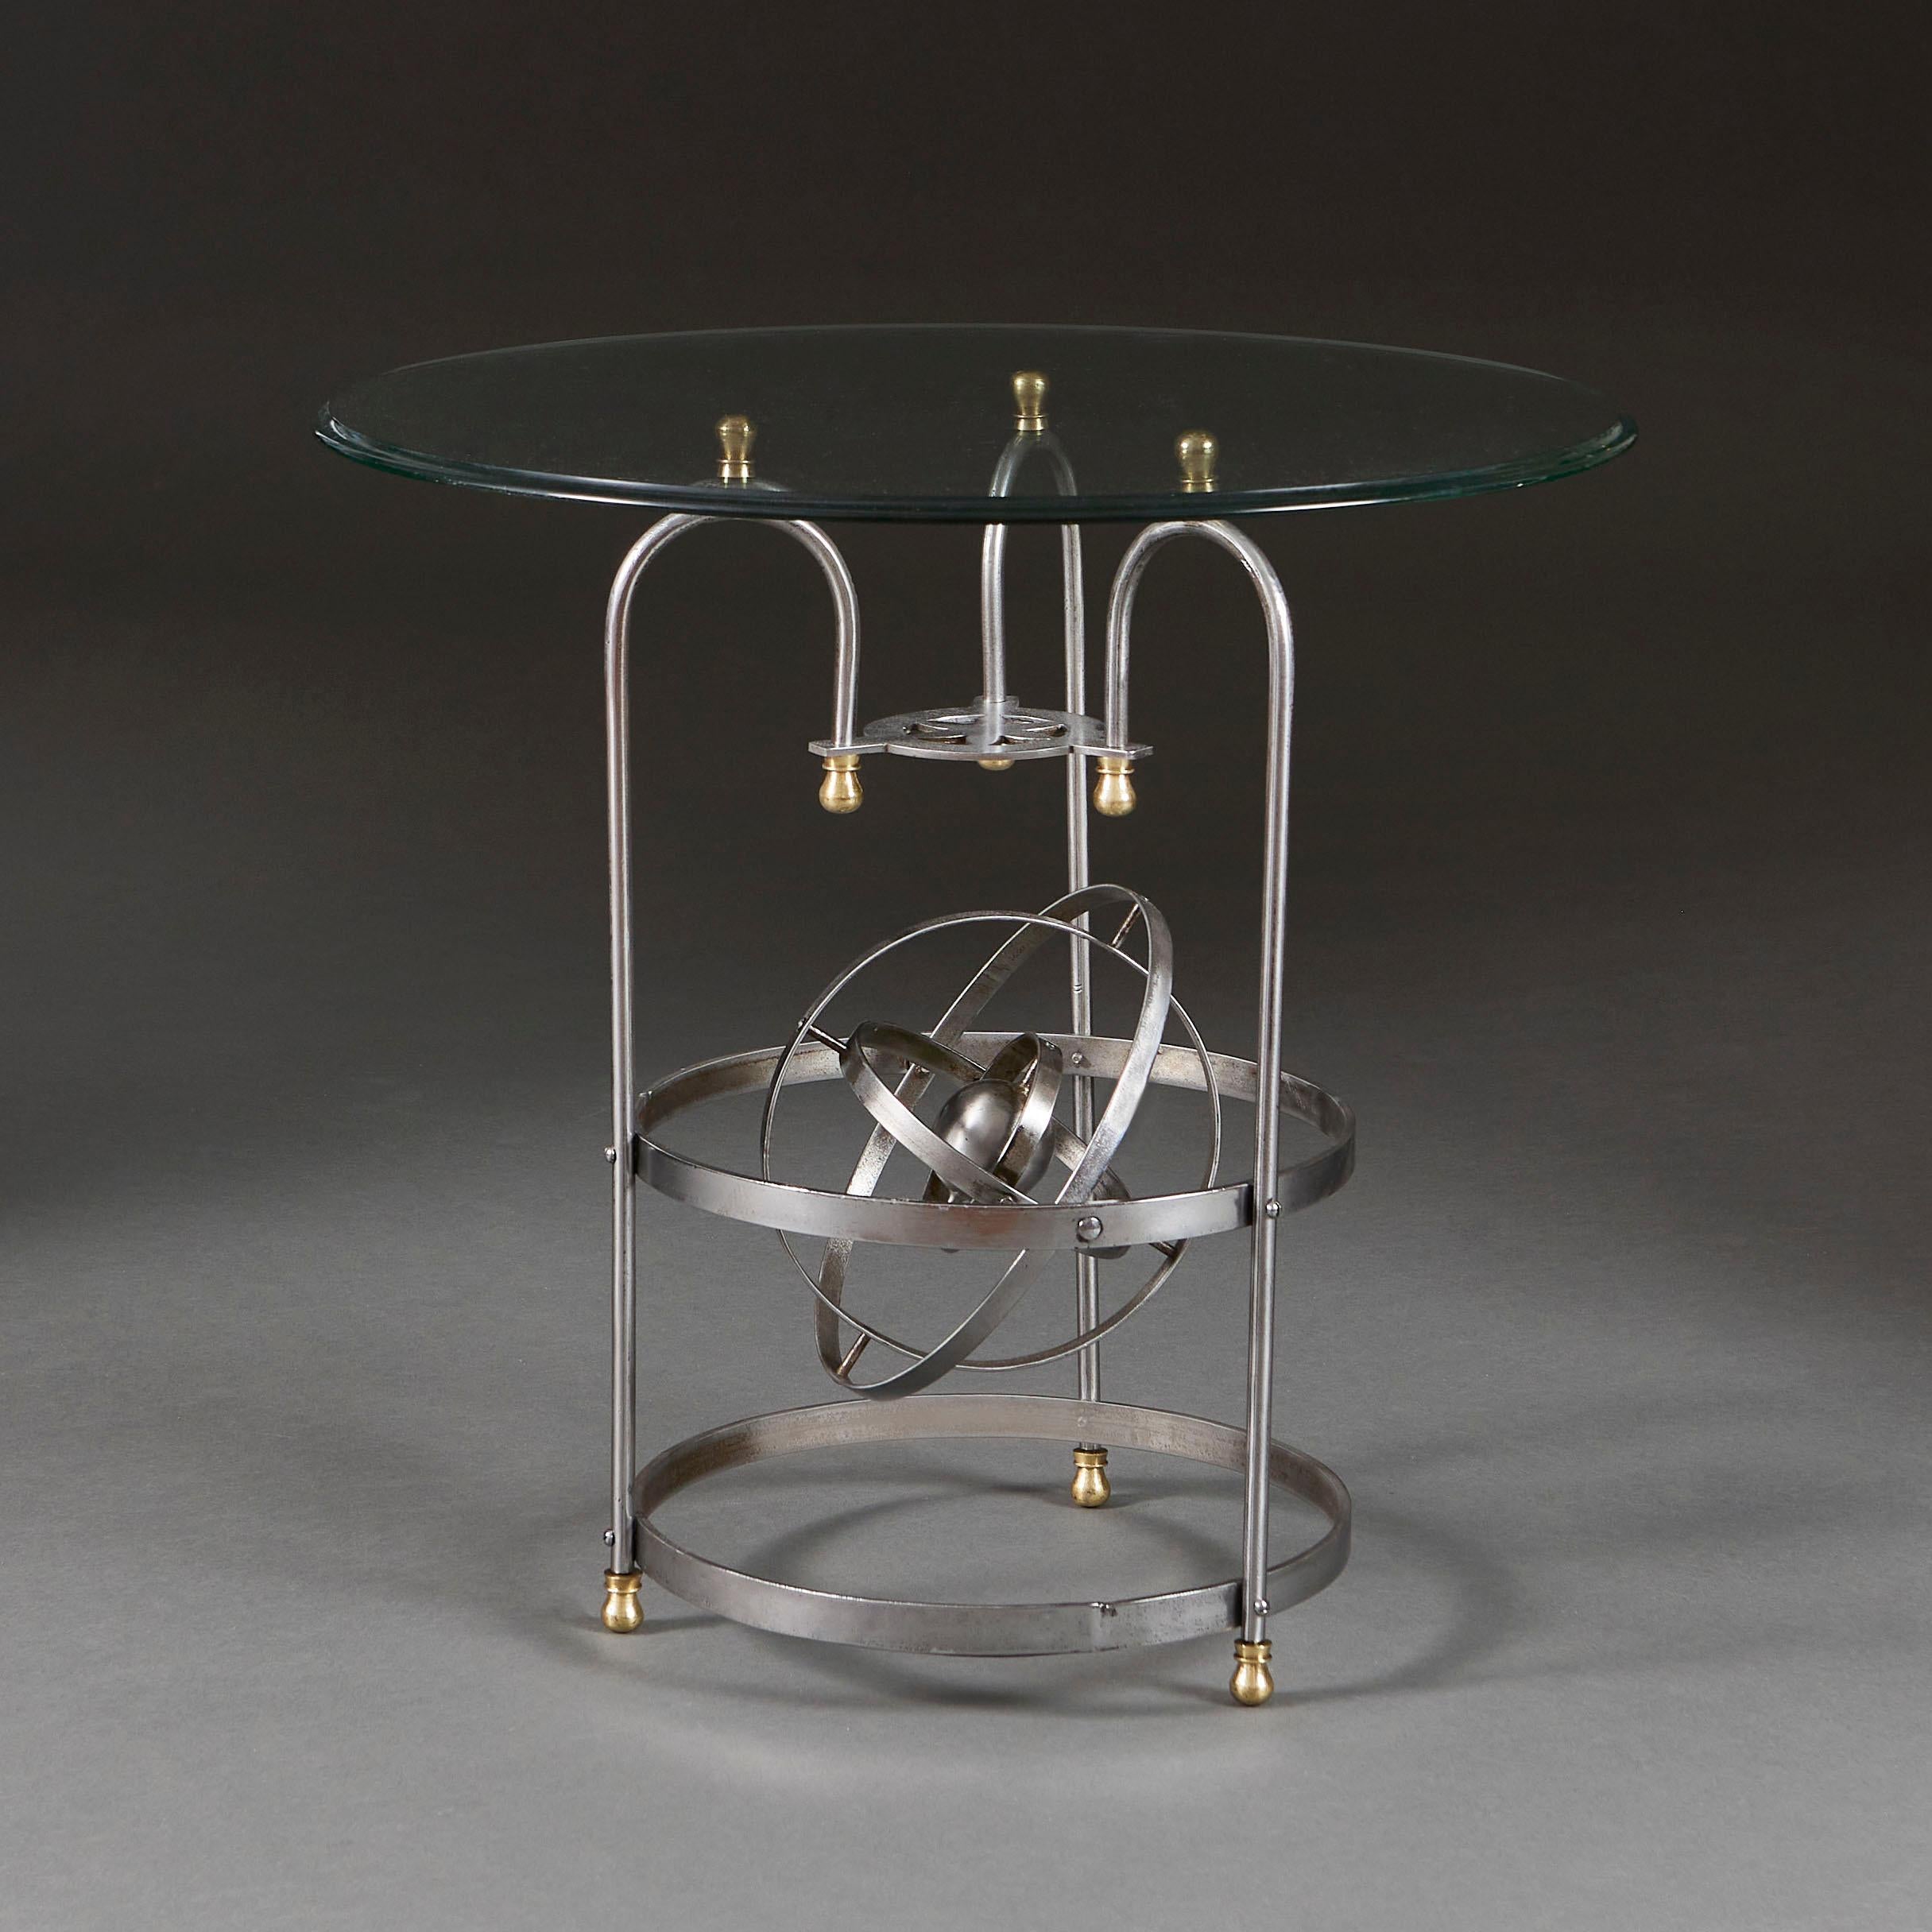 Frankreich, um 1930

Ein ungewöhnlicher Tisch aus Stahl und Messing aus dem frühen zwanzigsten Jahrhundert, modelliert mit einem Astrolabium aus konzentrischen Stahlkreisen innerhalb einer rotierenden Weltkugel, getragen von drei Messingfüßen.

Höhe